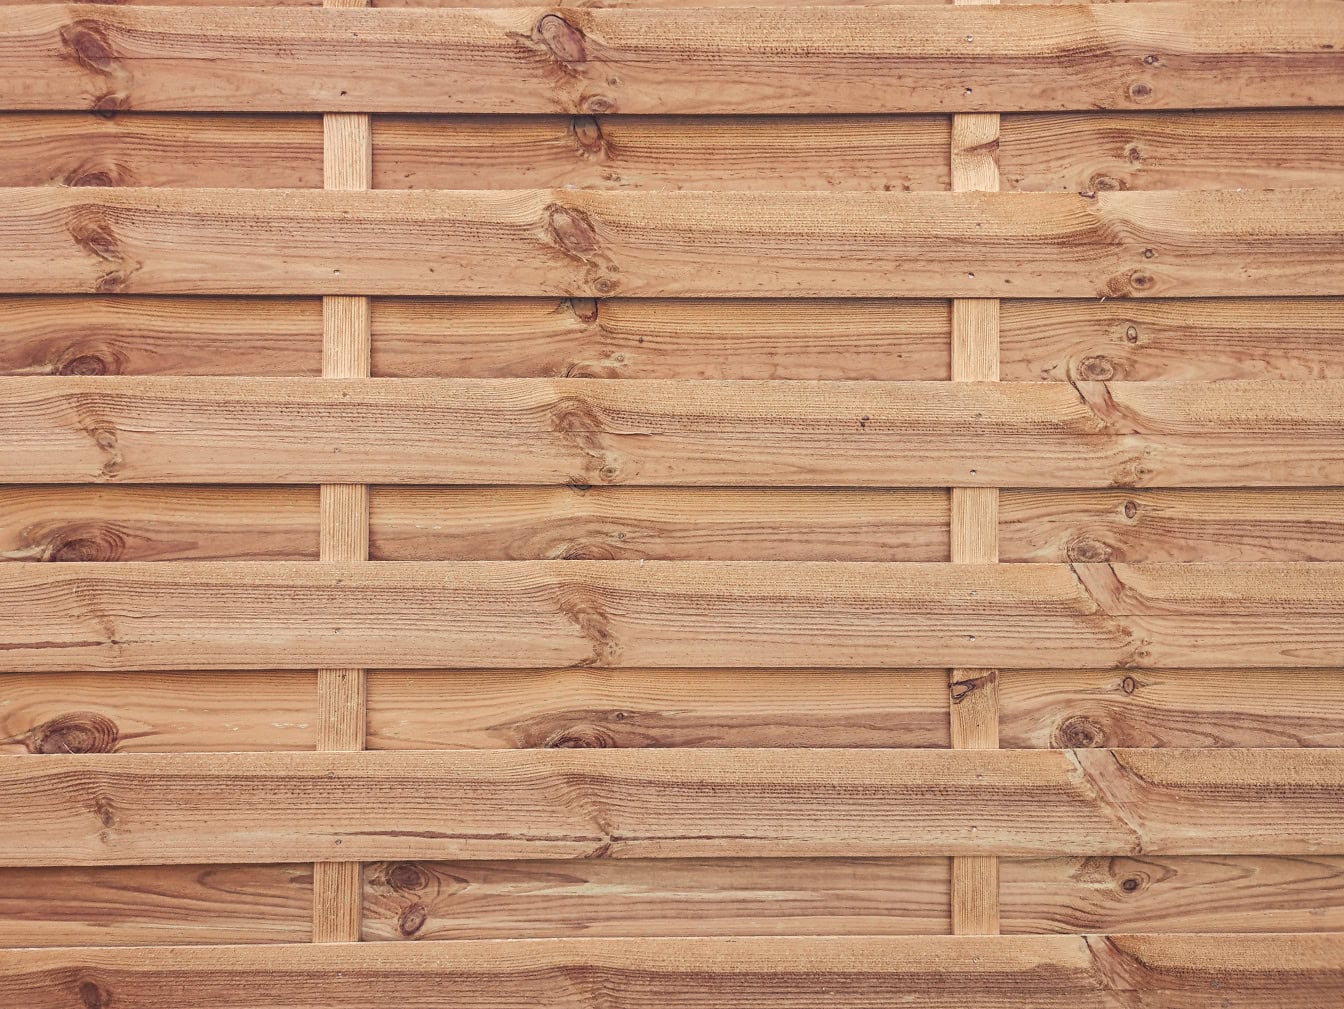 Textura de uma parede de madeira feita de tábuas finas de madeira com nós empilhados horizontalmente